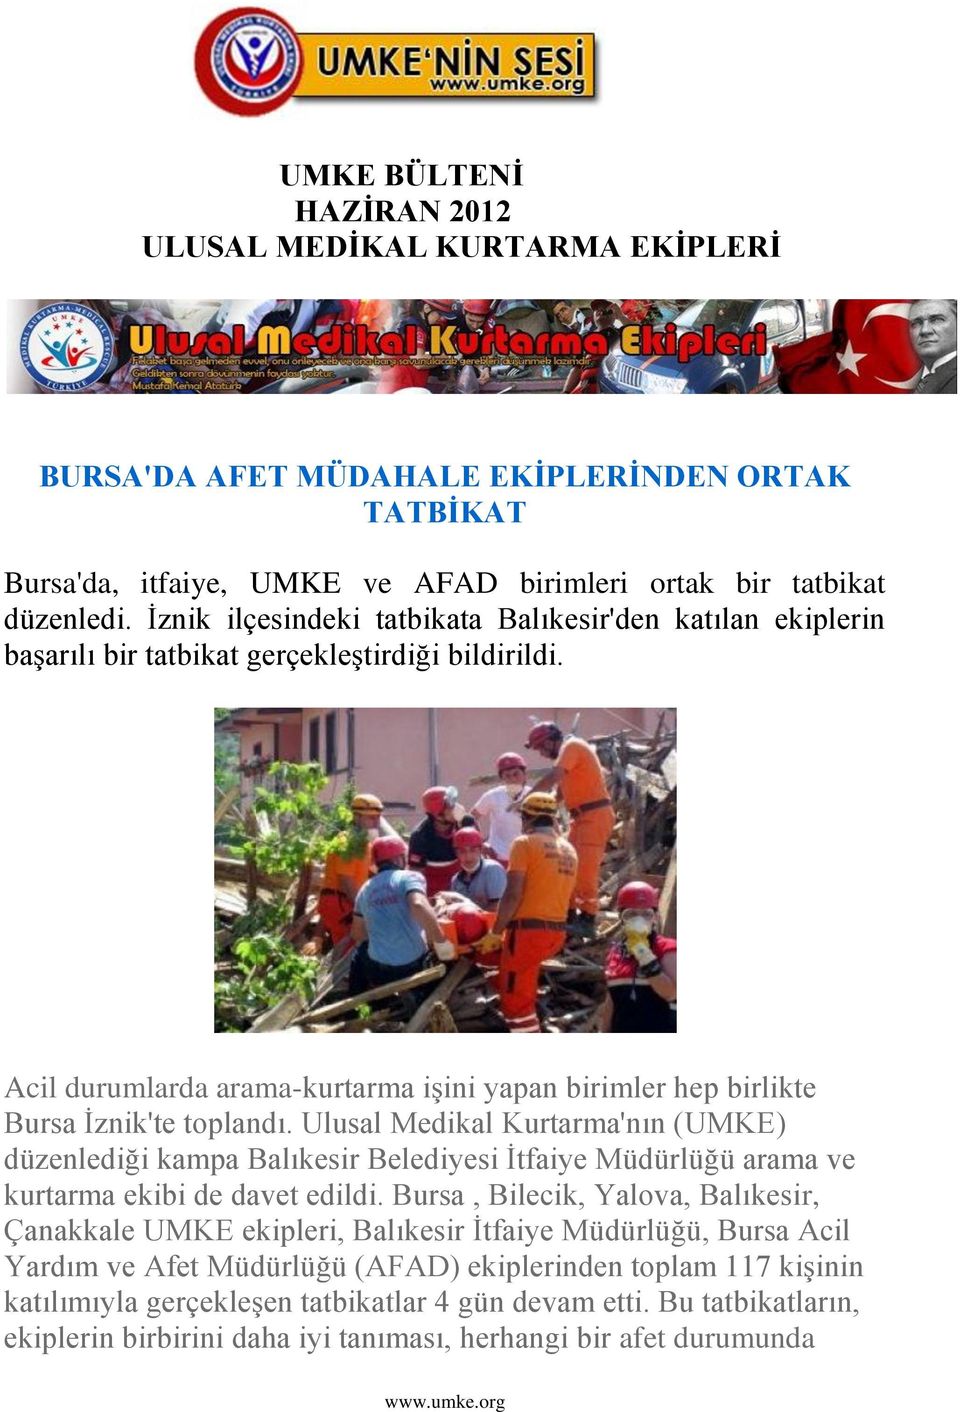 Ulusal Medikal Kurtarma'nın (UMKE) düzenlediği kampa Balıkesir Belediyesi Ġtfaiye Müdürlüğü arama ve kurtarma ekibi de davet edildi.